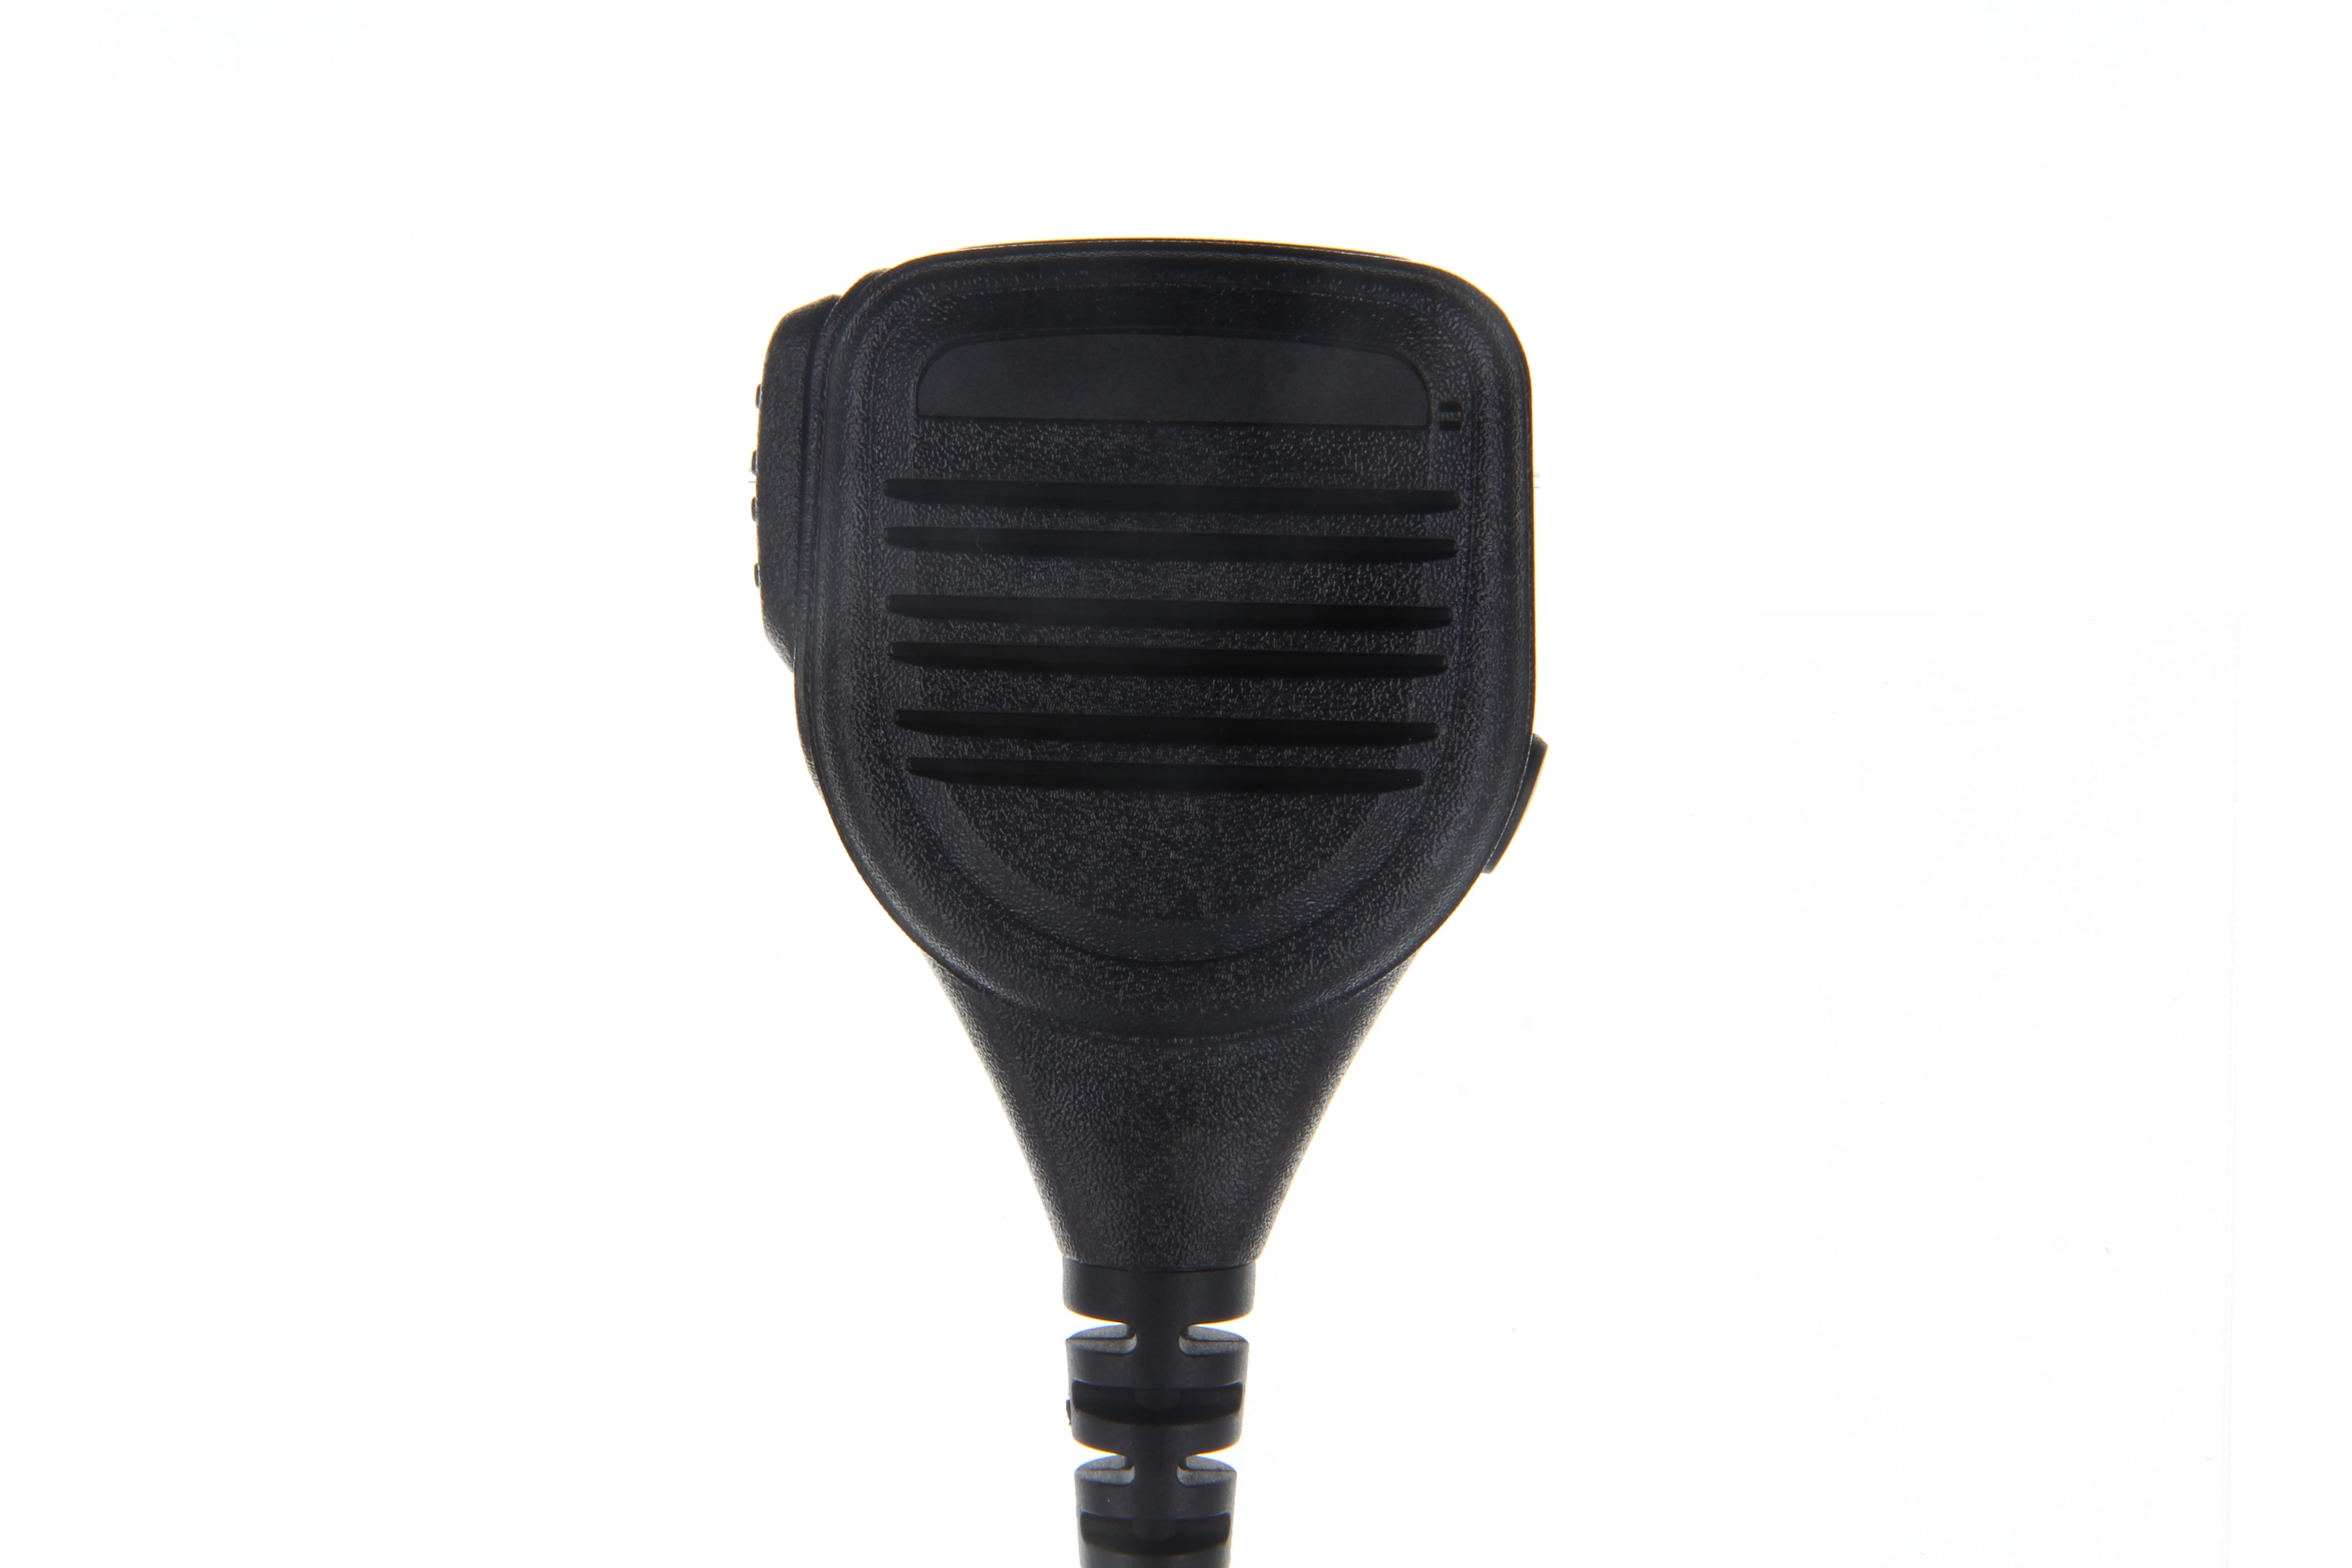 CoPacks speaker microphone GE-XM03 suitable for Kenwood TK2202, TK2160, TK3202